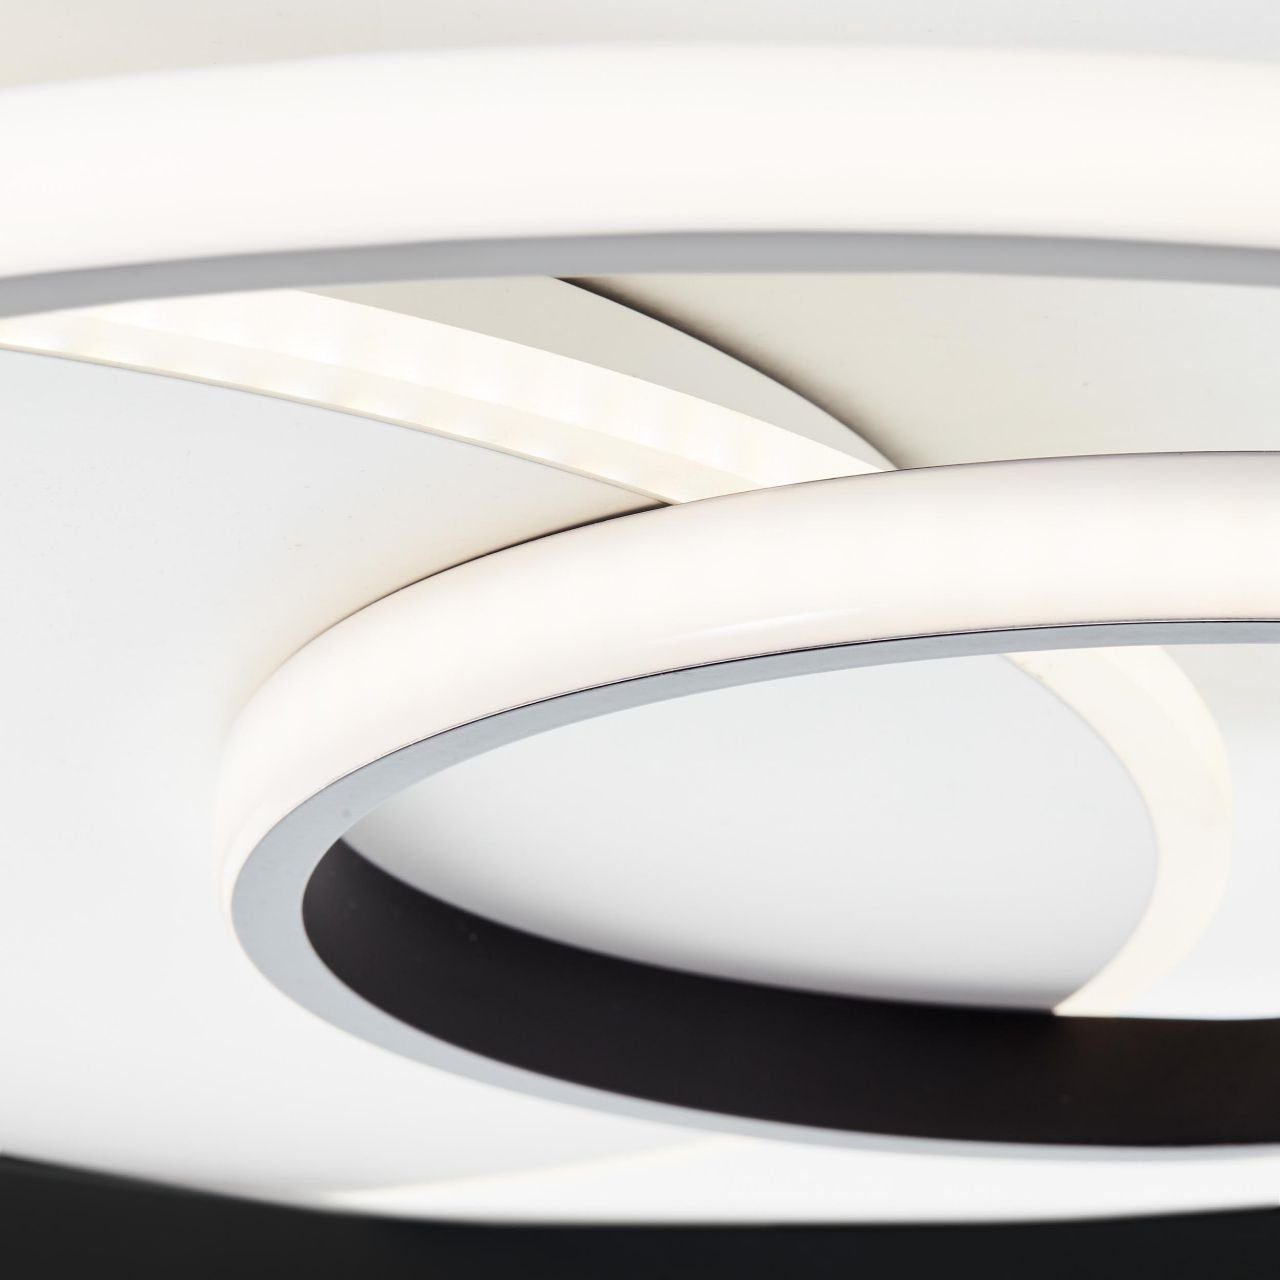 Metall/Kunststof 51x51cm Lampe, weiß/schwarz, Merapi, LED Deckenleuchte 3000K, Deckenleuchte Brilliant Merapi